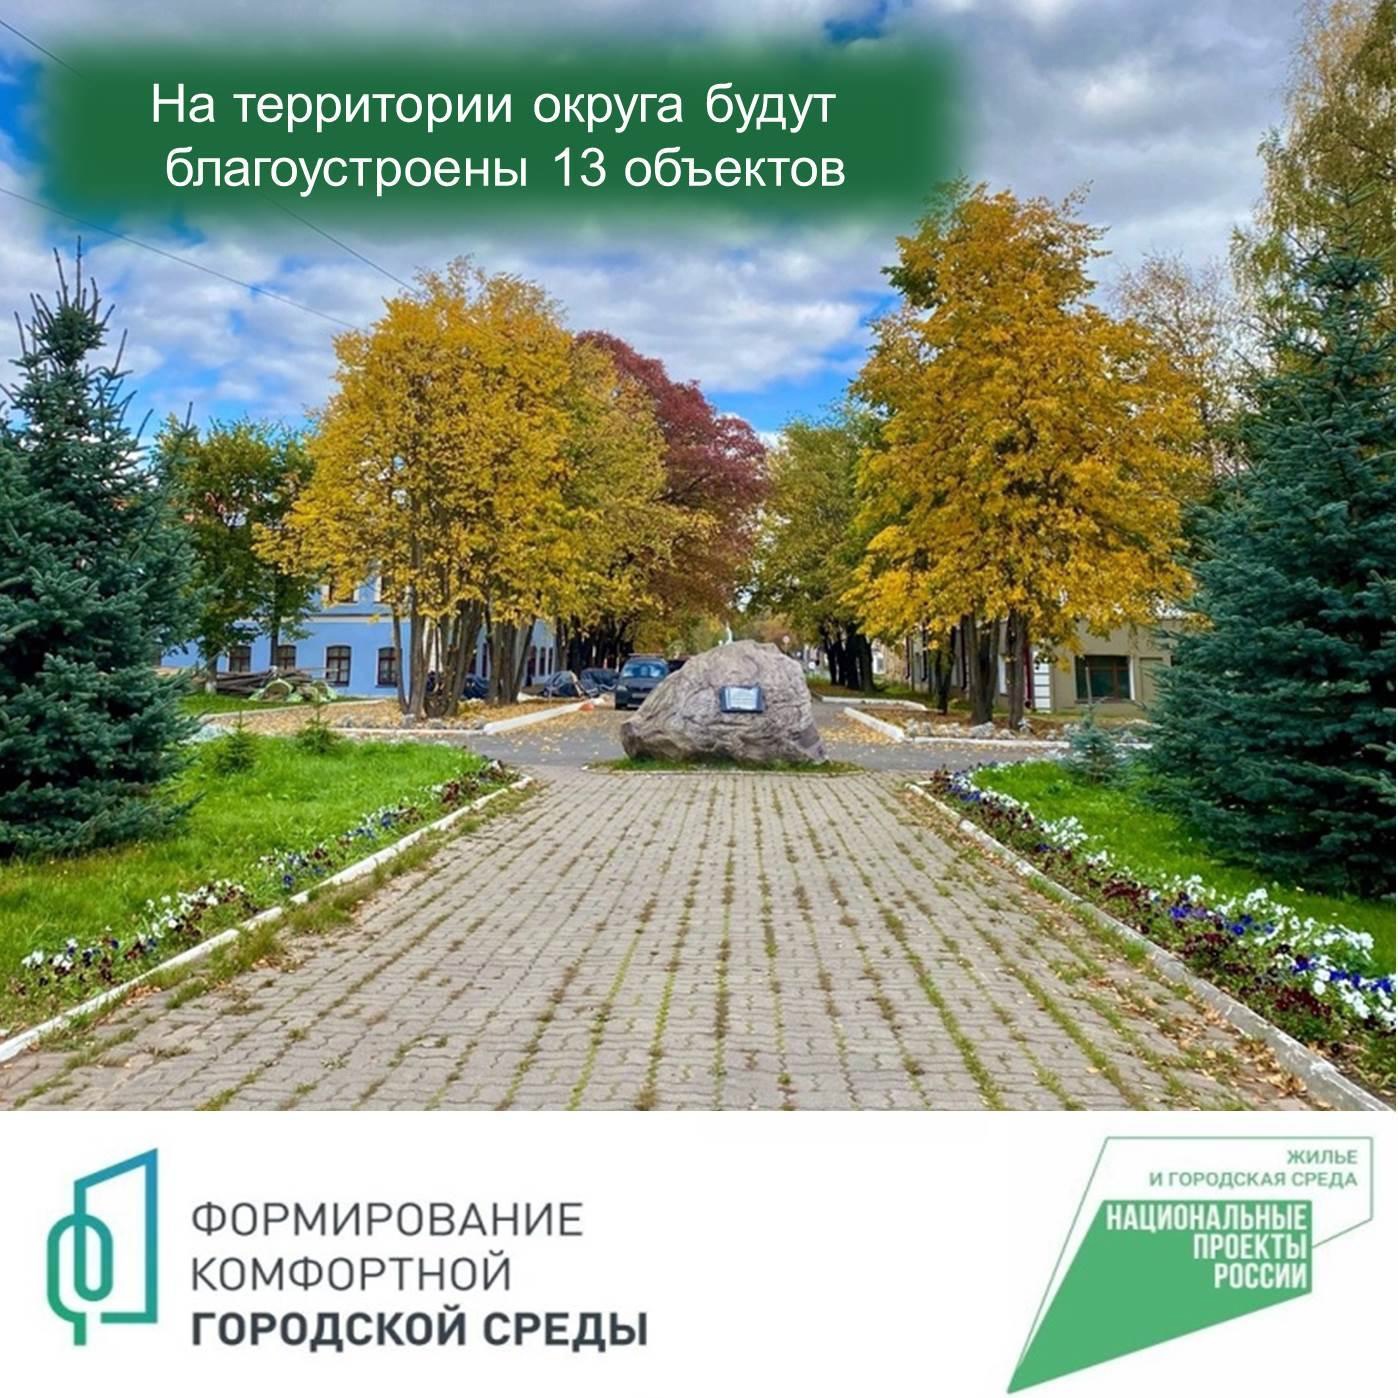 300 мероприятий будет проведено на благоустроенных территориях Вологодской области в рамках «Марафона достижений».